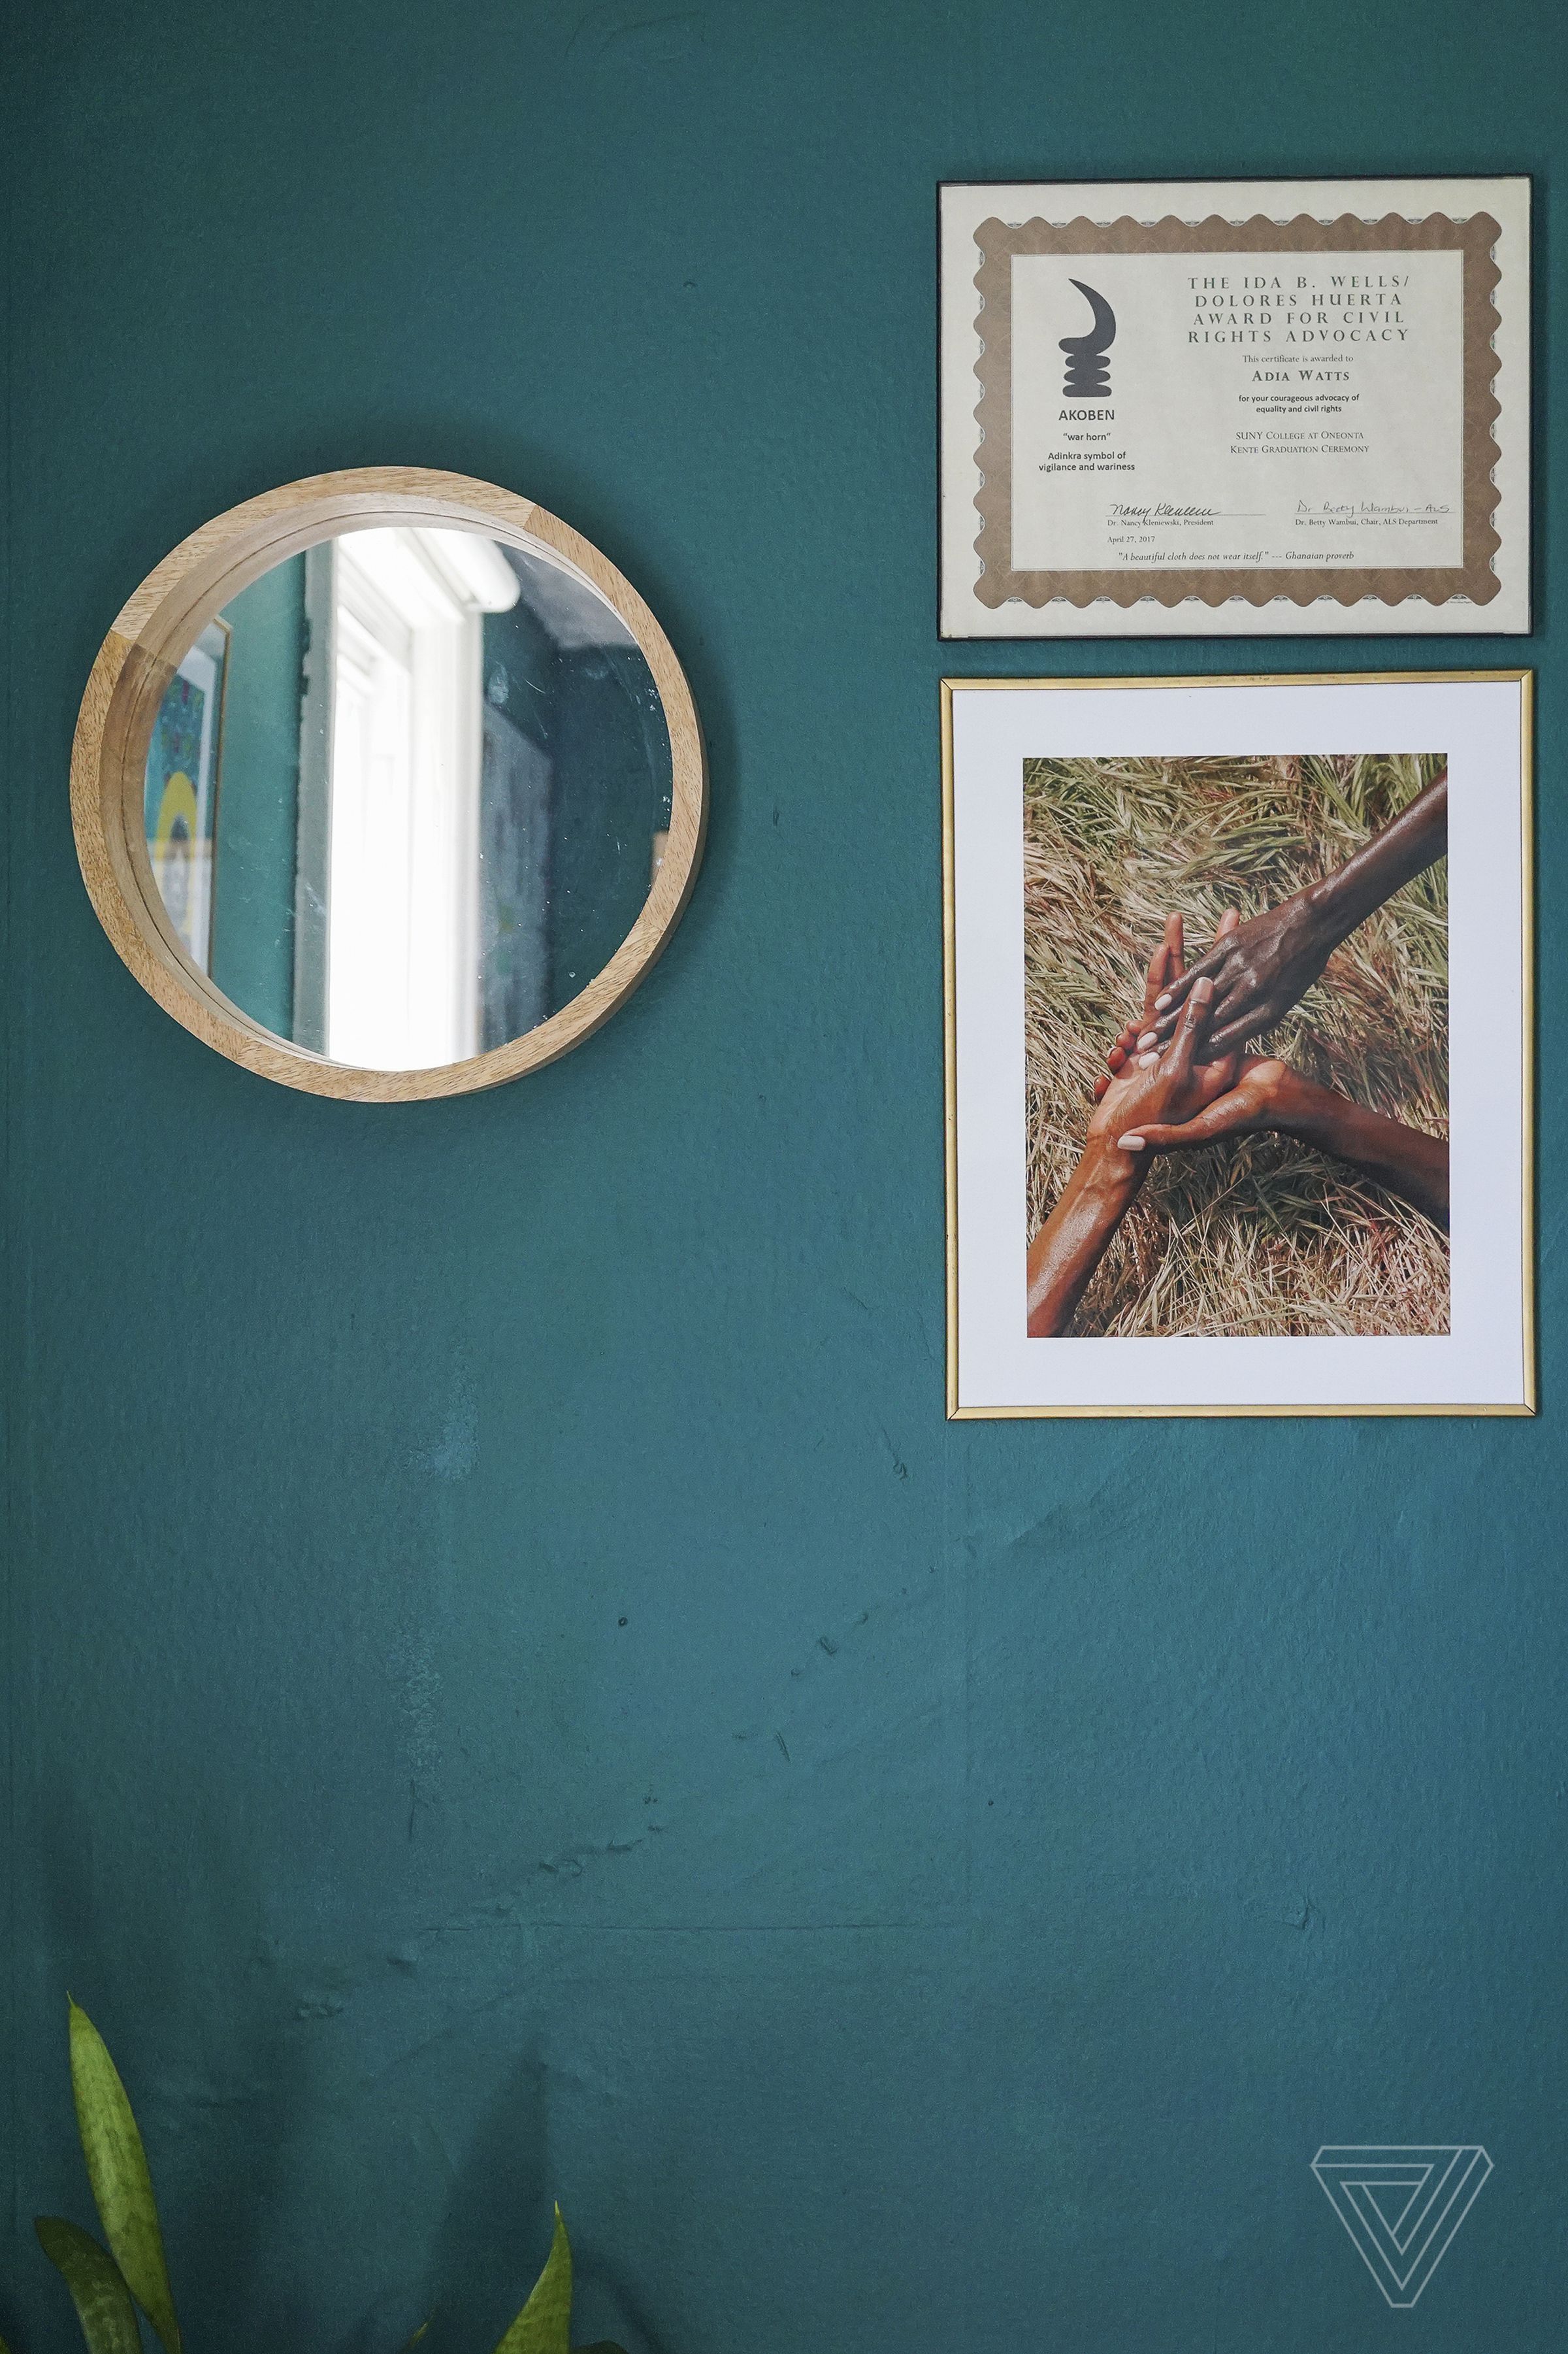 A mirror, an award, and a photograph